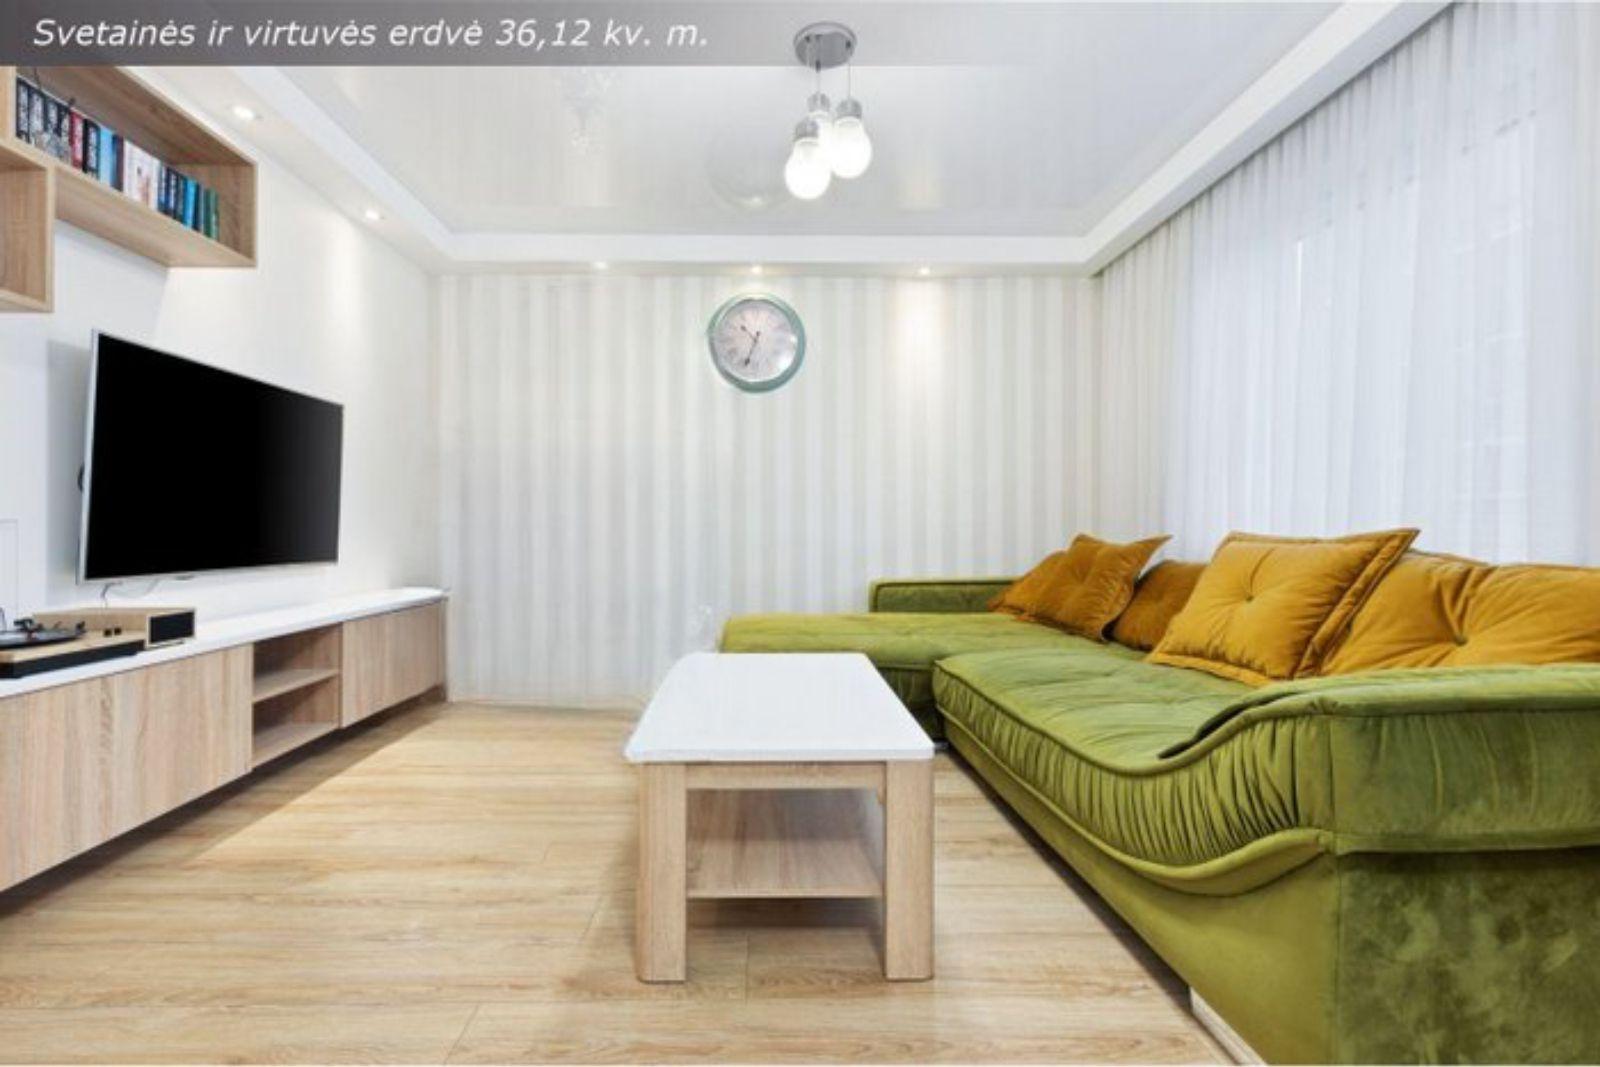 Parduodamas erdvus, jaukus bei moderniai įrengtas 3 kambarių butas miesto centre, Pušų g. 52, Gargžduose, Klaipėdos r. sav.